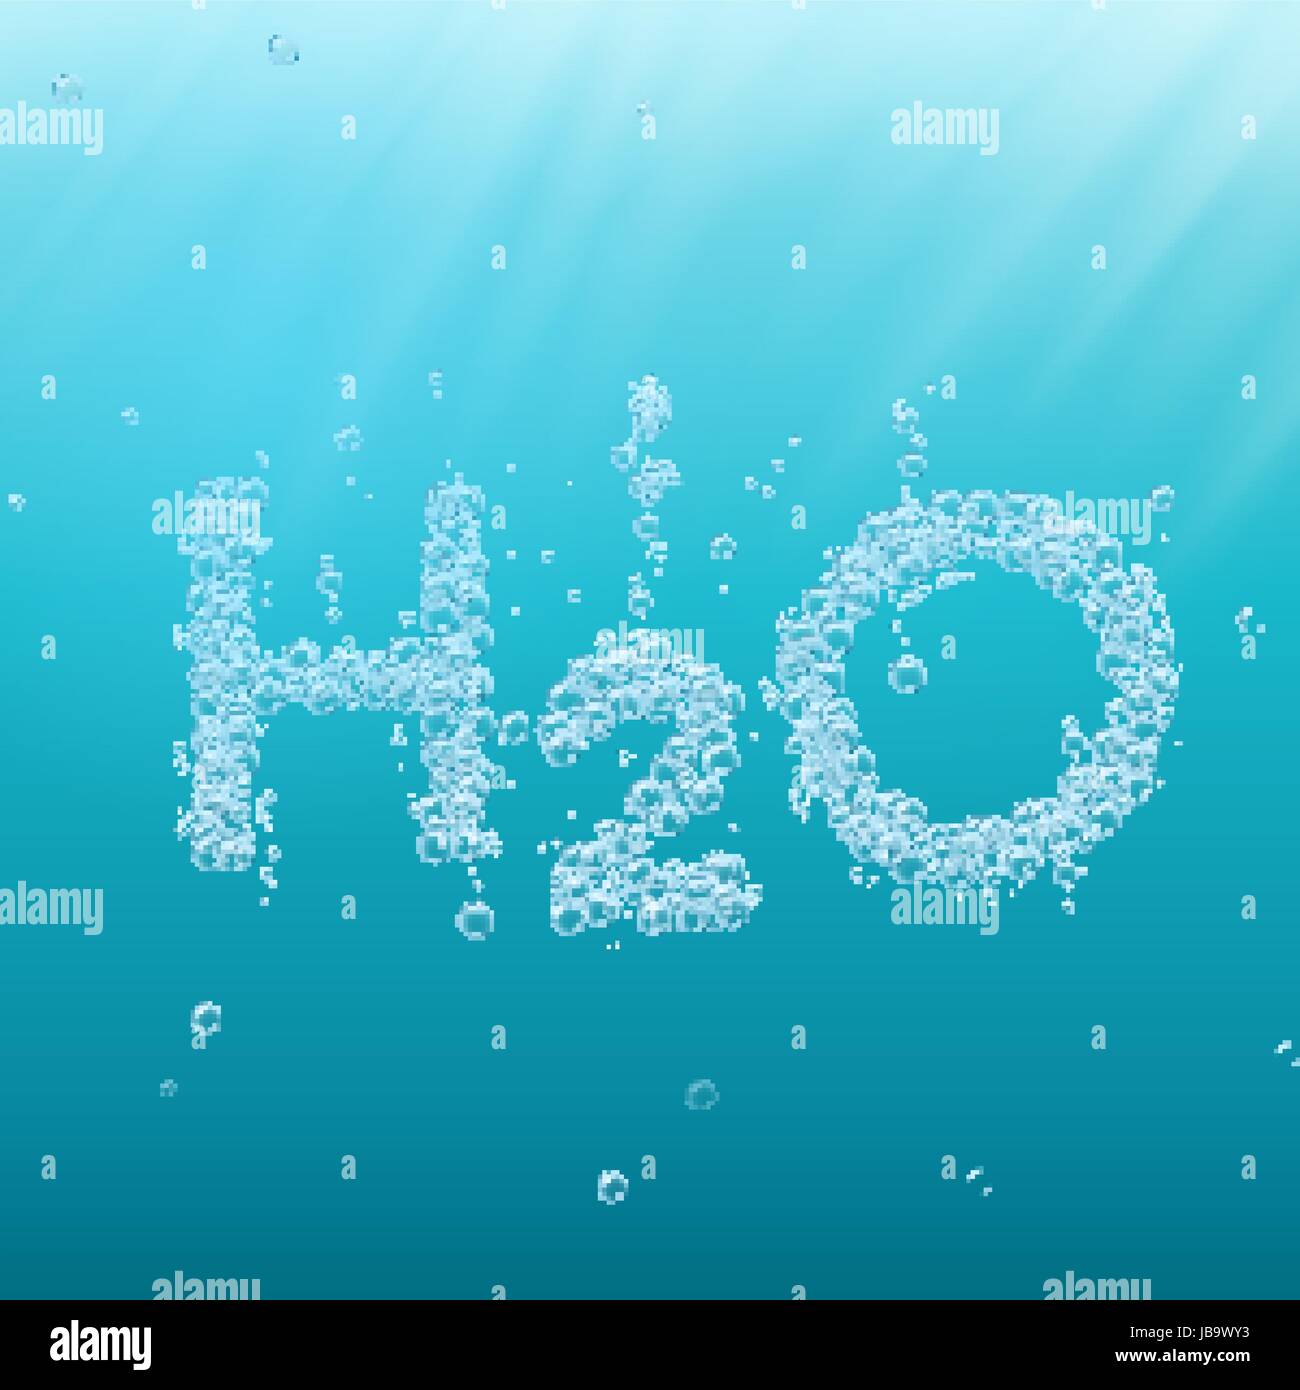 Вода h2o отзывы. Вода h2o. Вода аш 2 о. H2o фон. Аш 2 о формула воды.